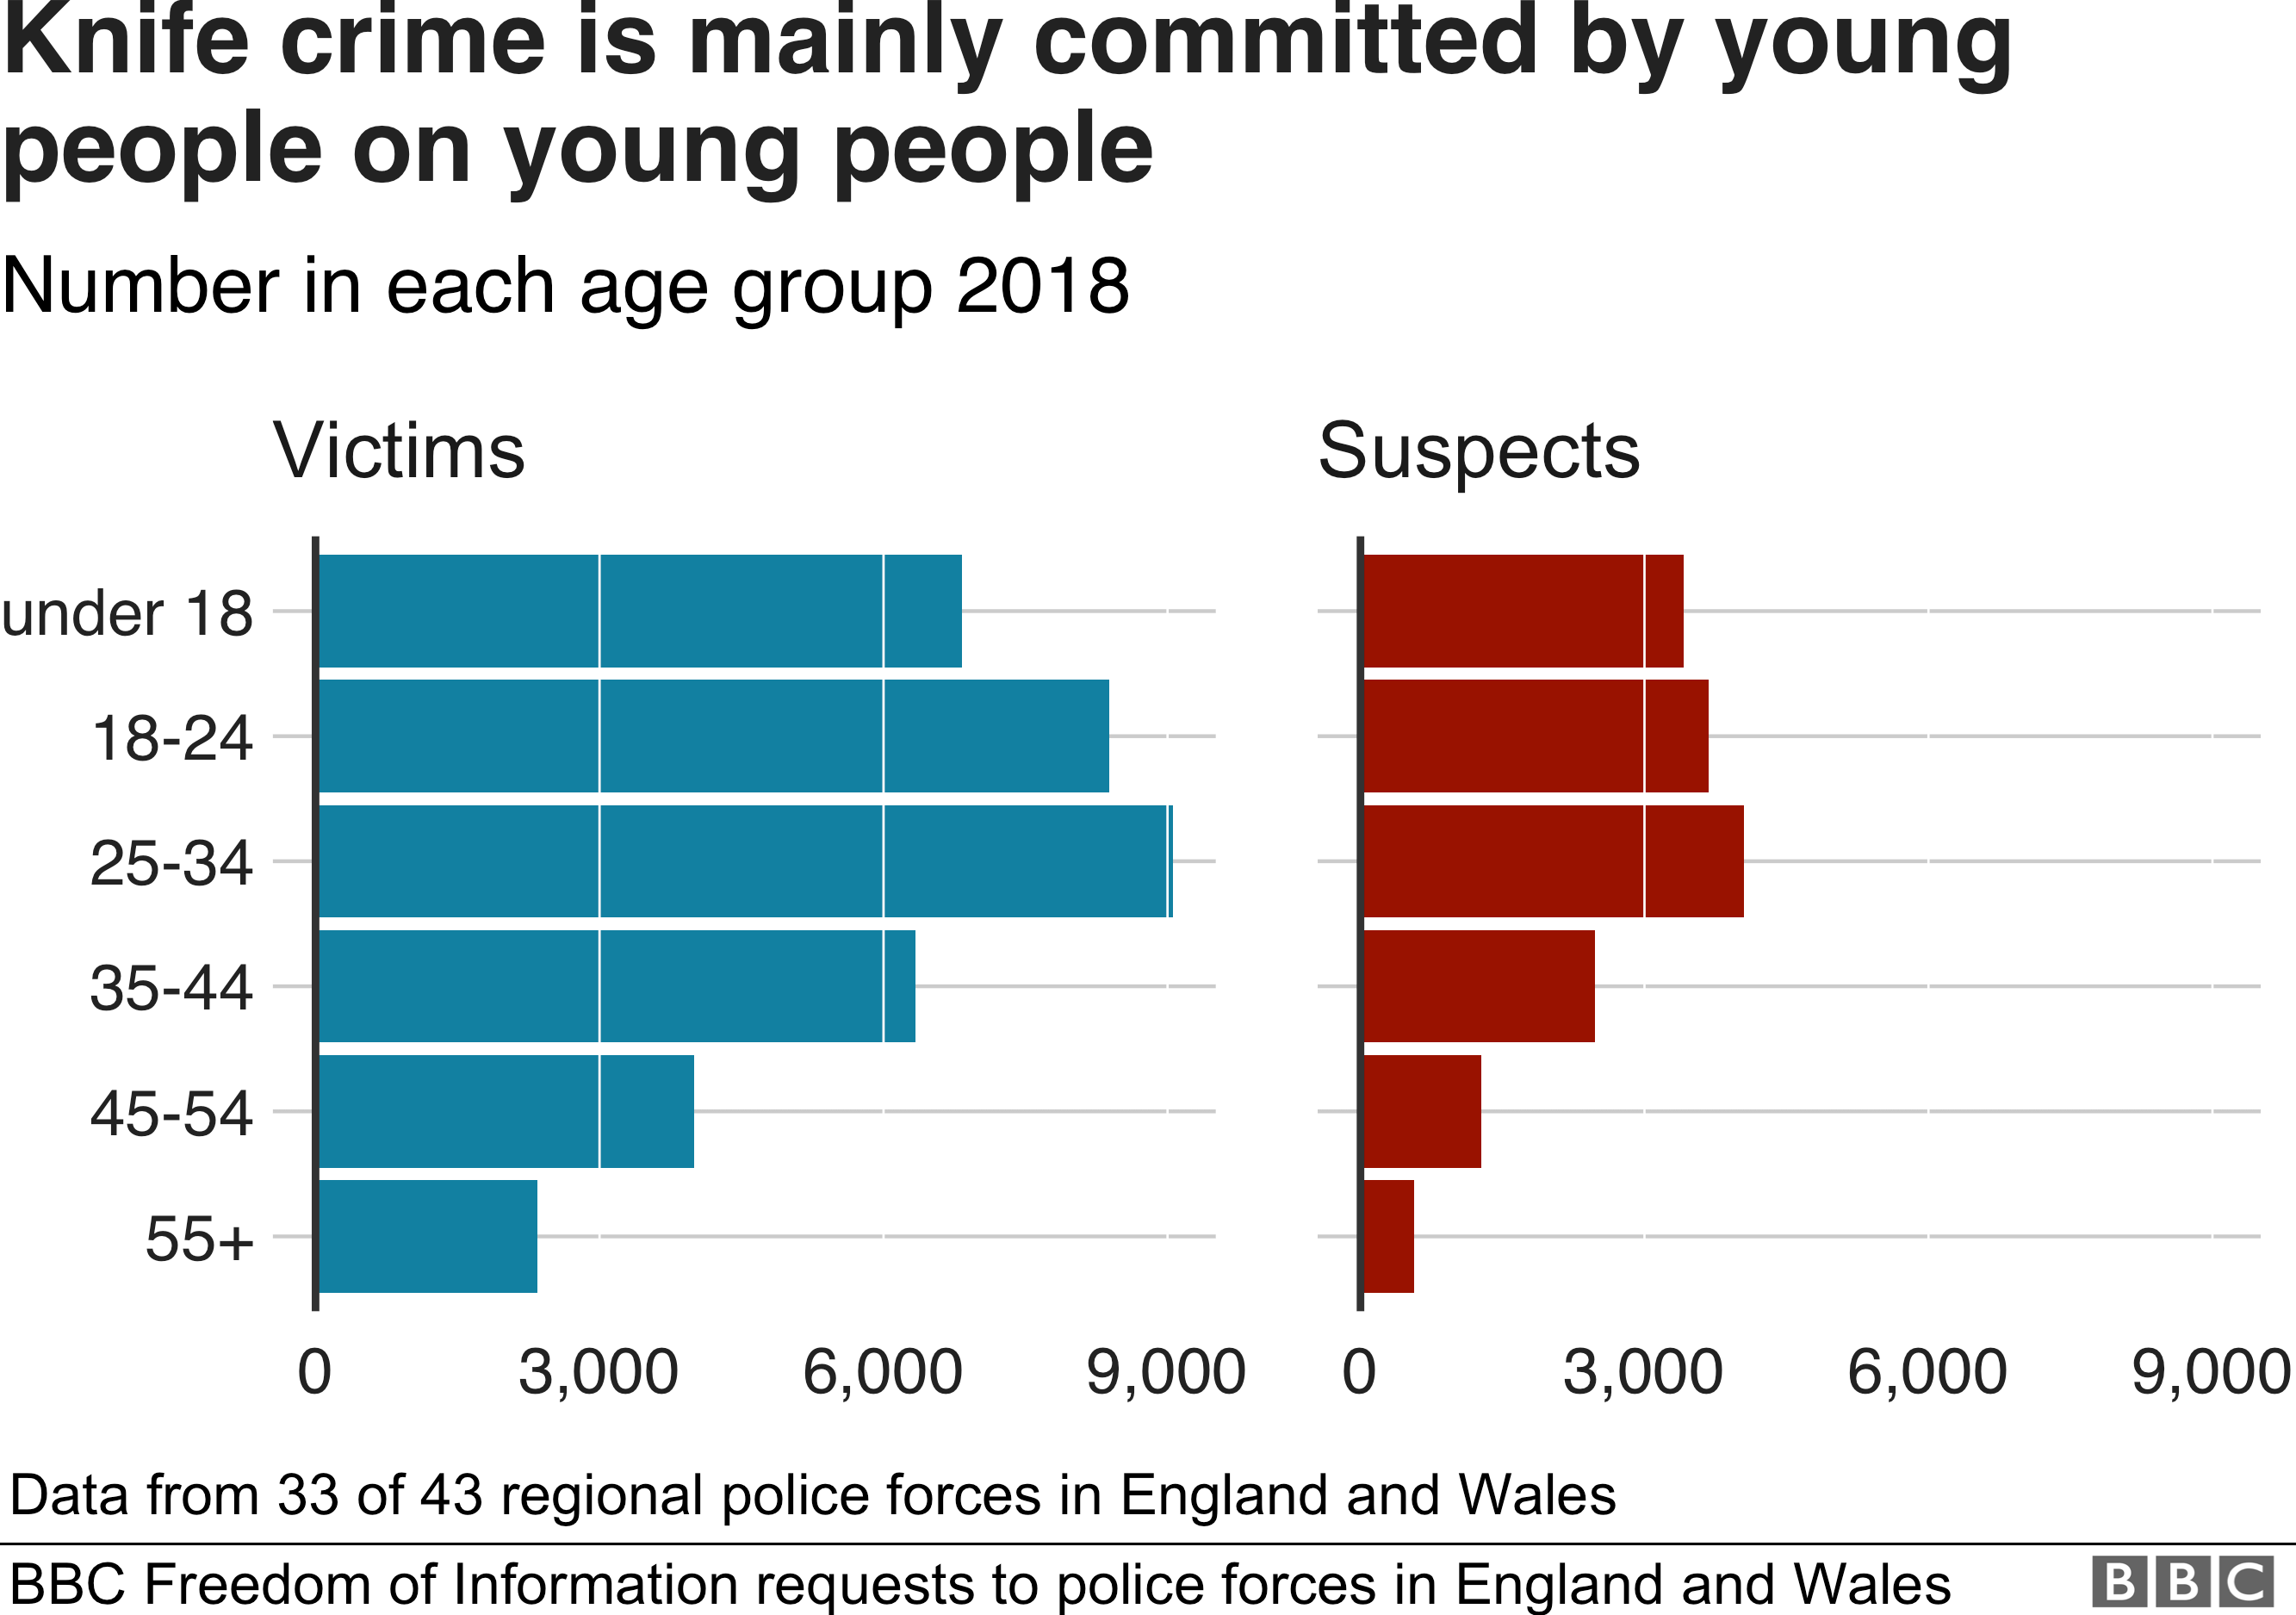 Жертвы ножевых преступлений в основном моложе 35 лет. Преступники также в основном моложе 35 лет.